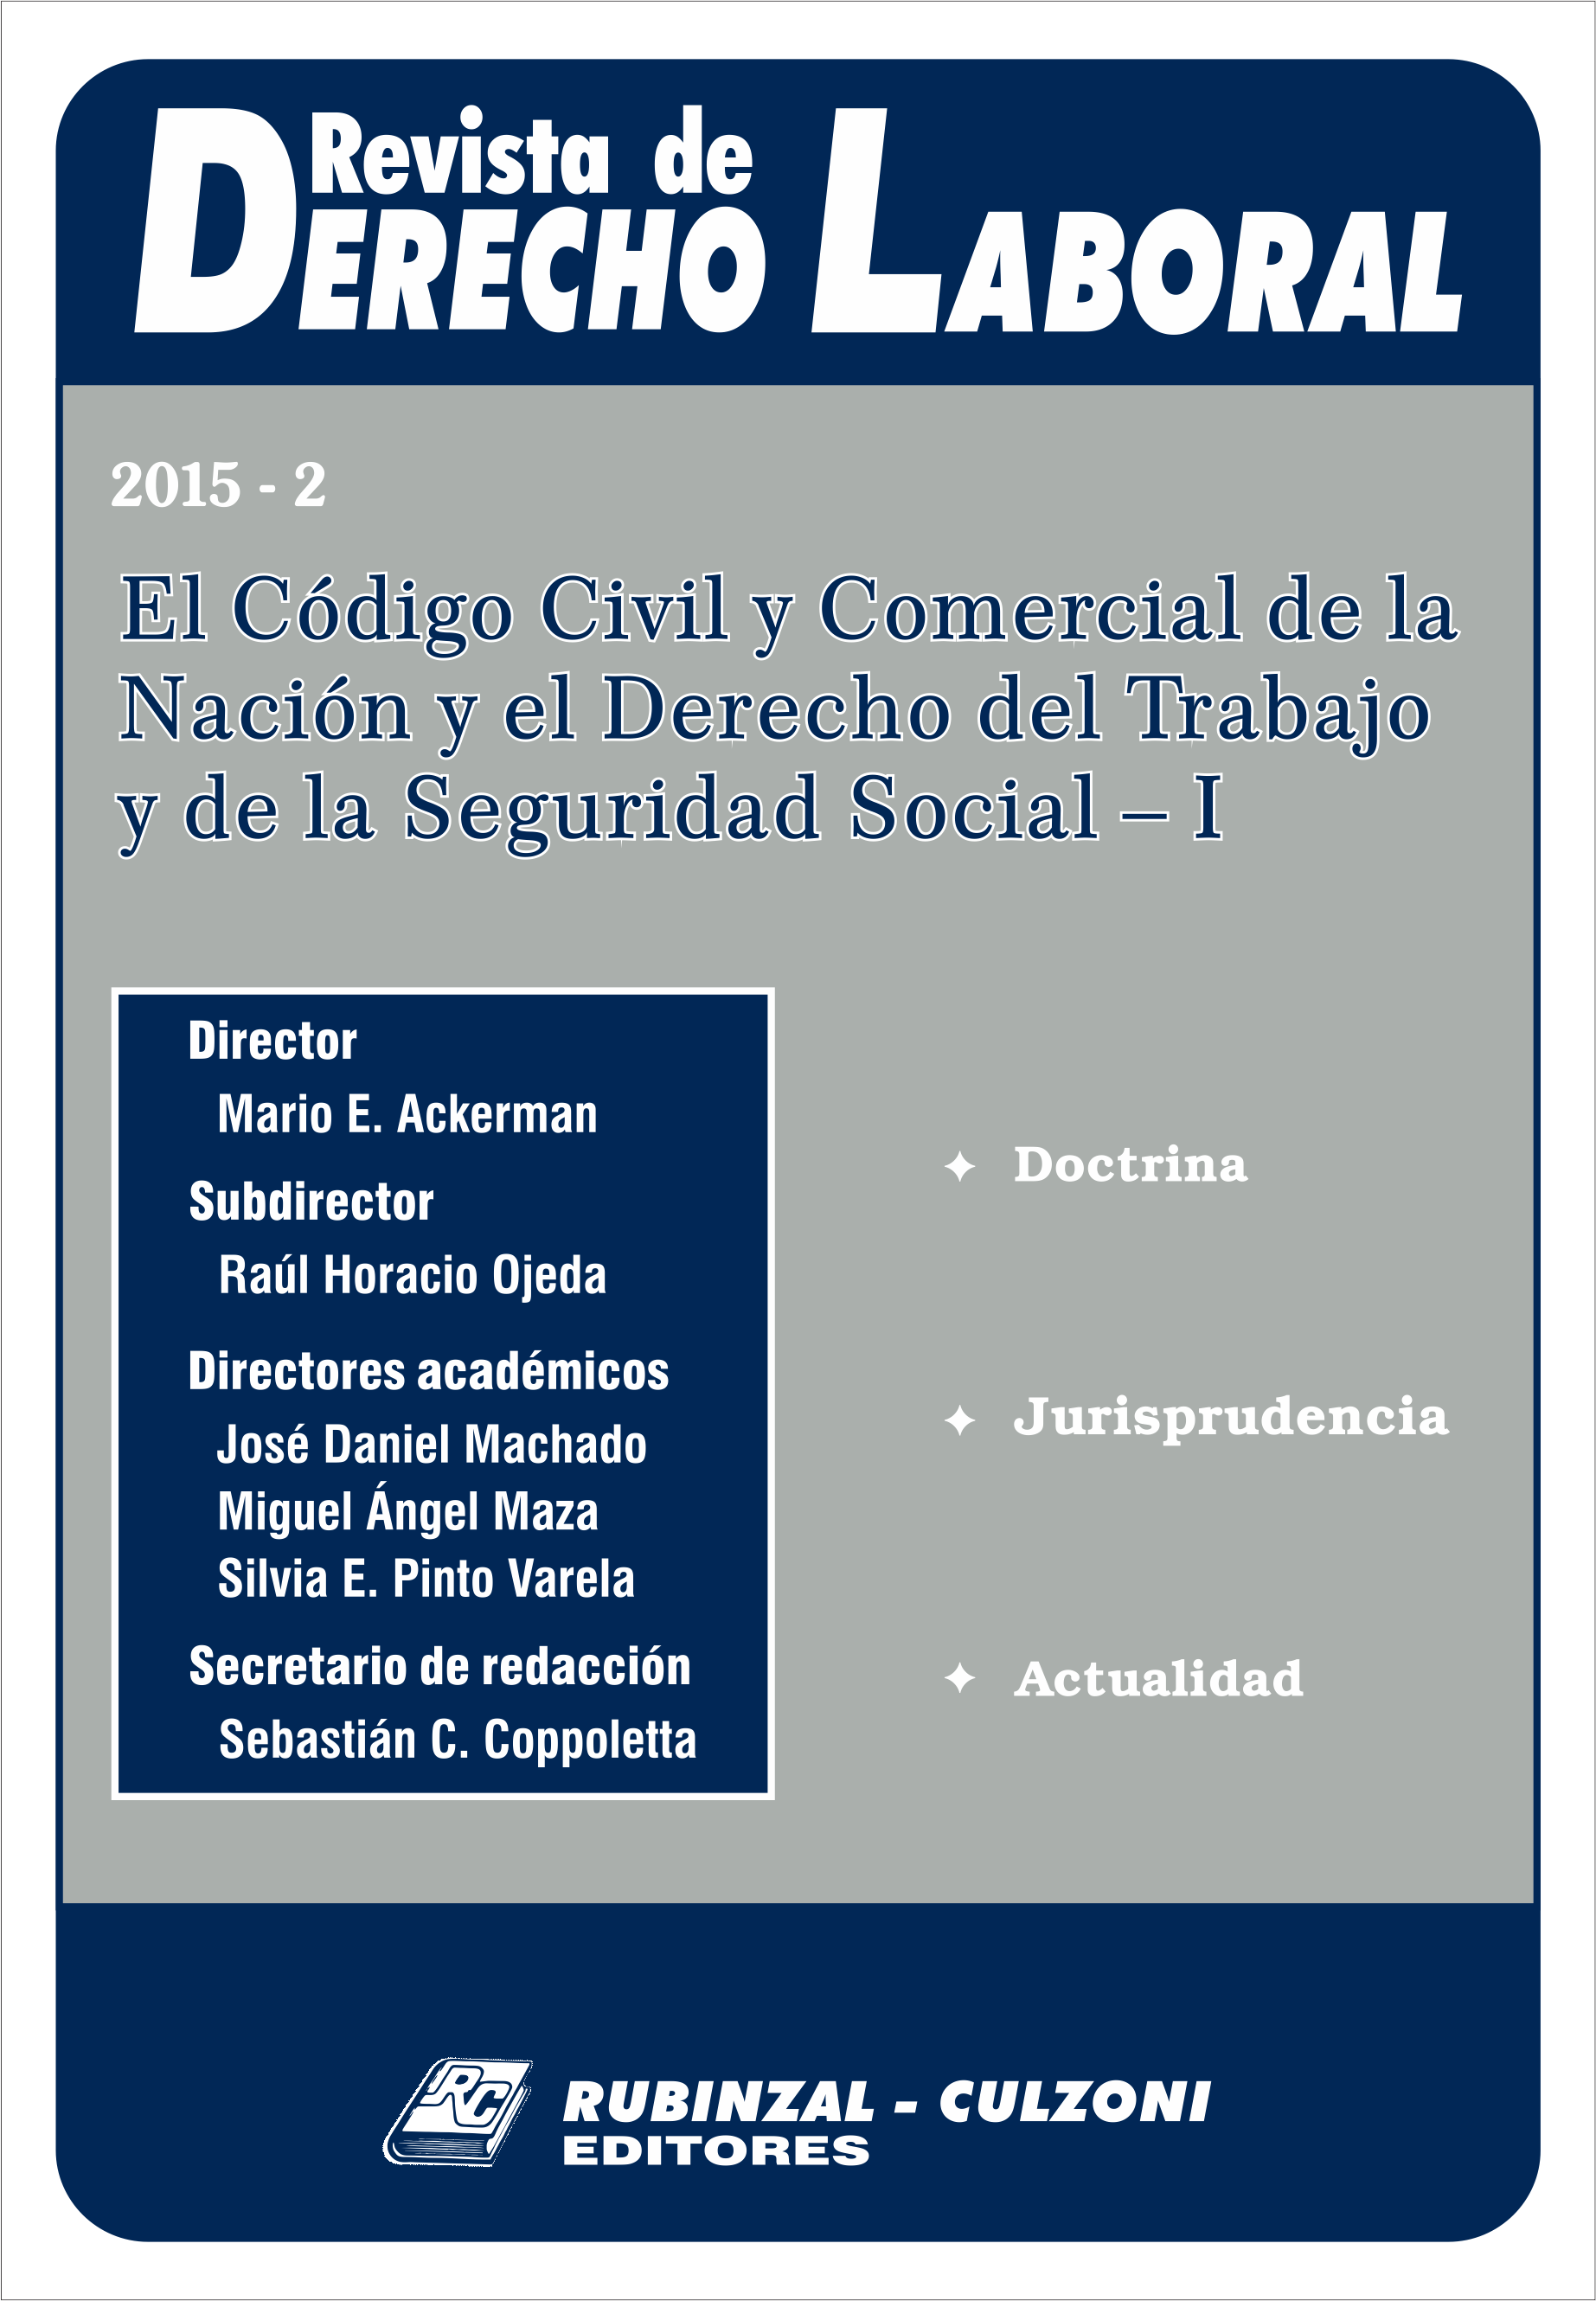 Revista de Derecho Laboral - El Código Civil y Comercial de la Nación y el Derecho del Trabajo y de la Seguridad Social - I